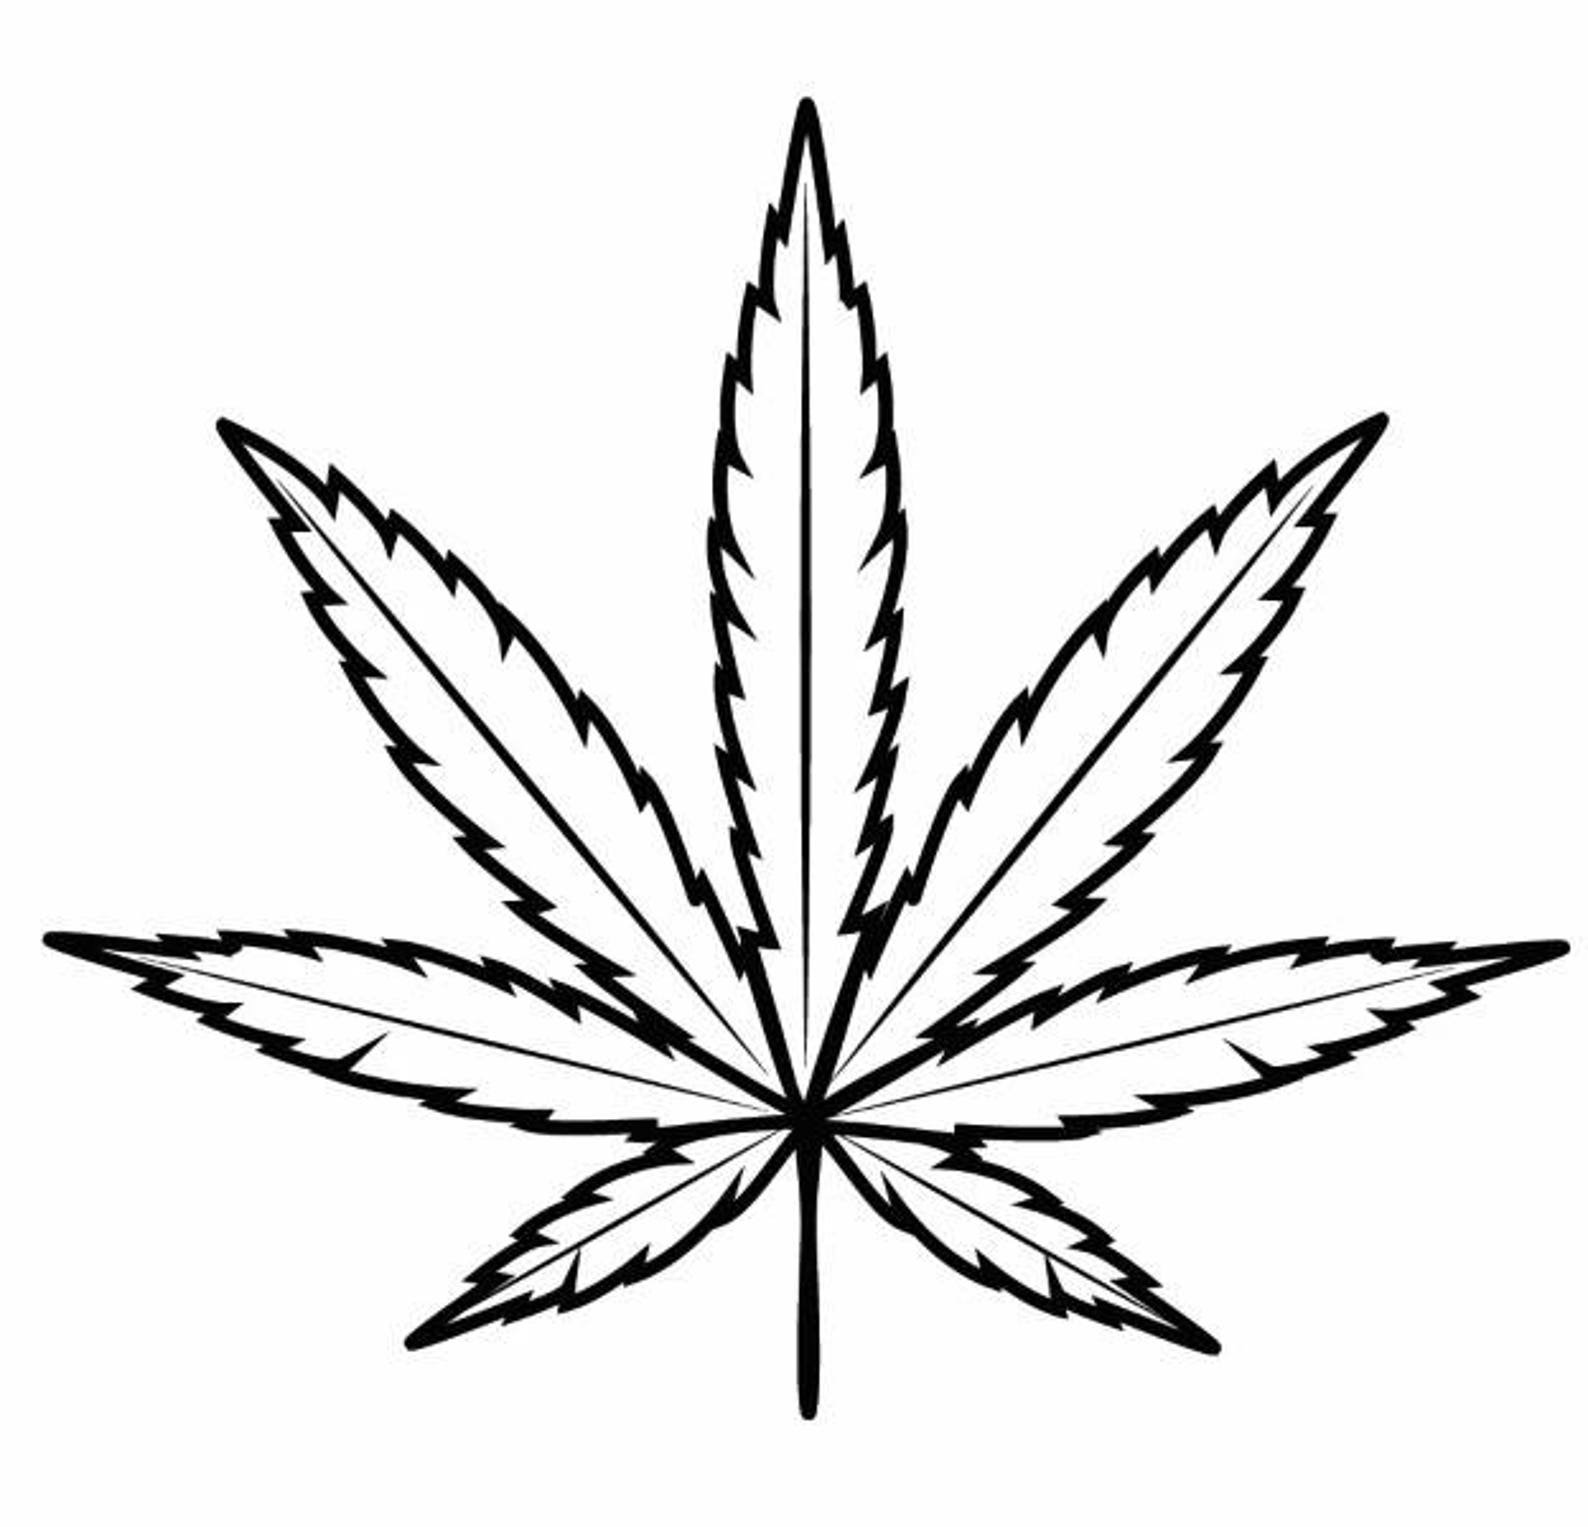 Как рисовать лист конопли курят марихуану